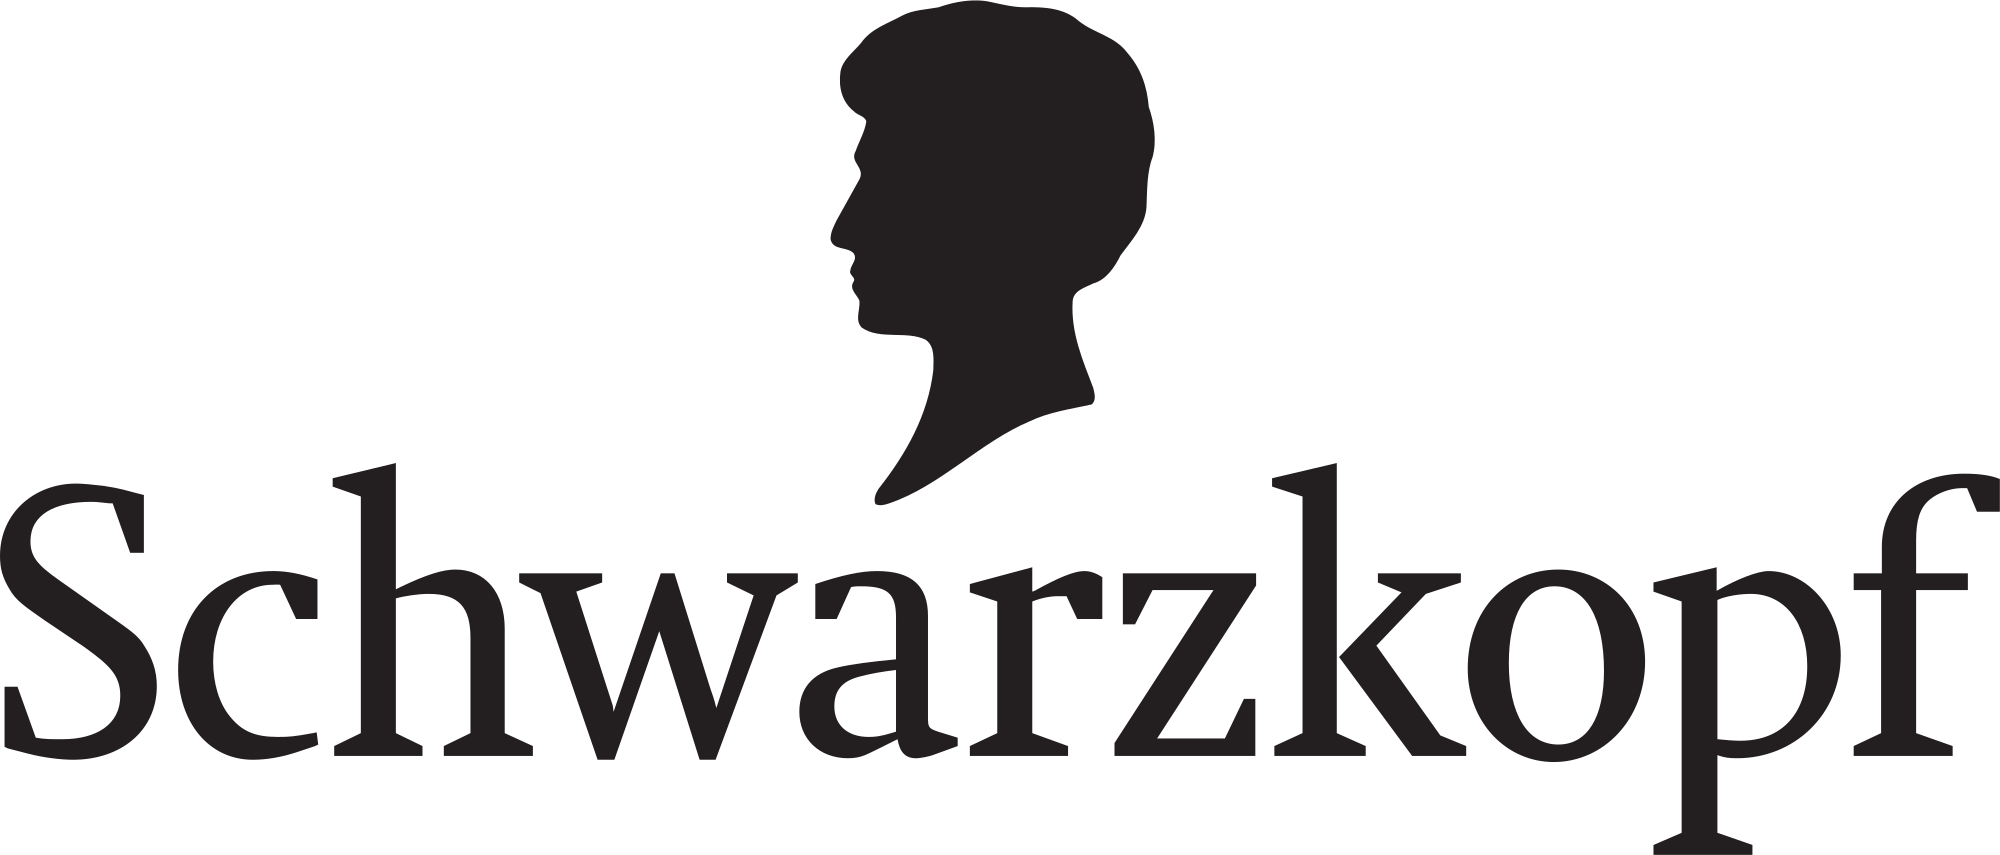 2000px-Schwarzkopf_(Haarkosmetik)_logo.svg